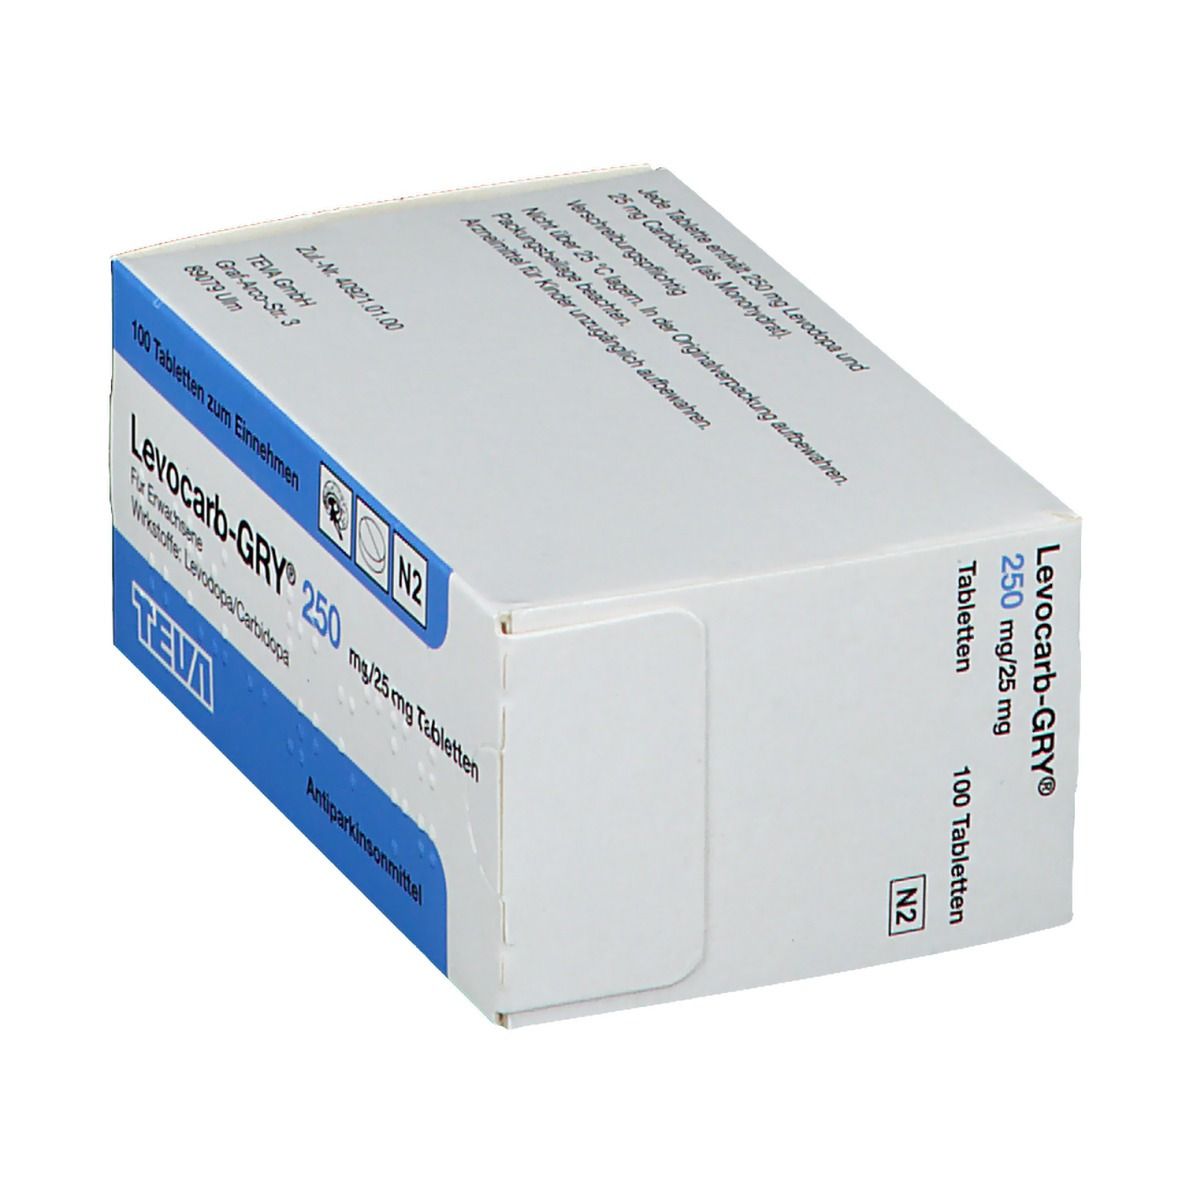 Levocarb-GRY® 250 mg/25 mg